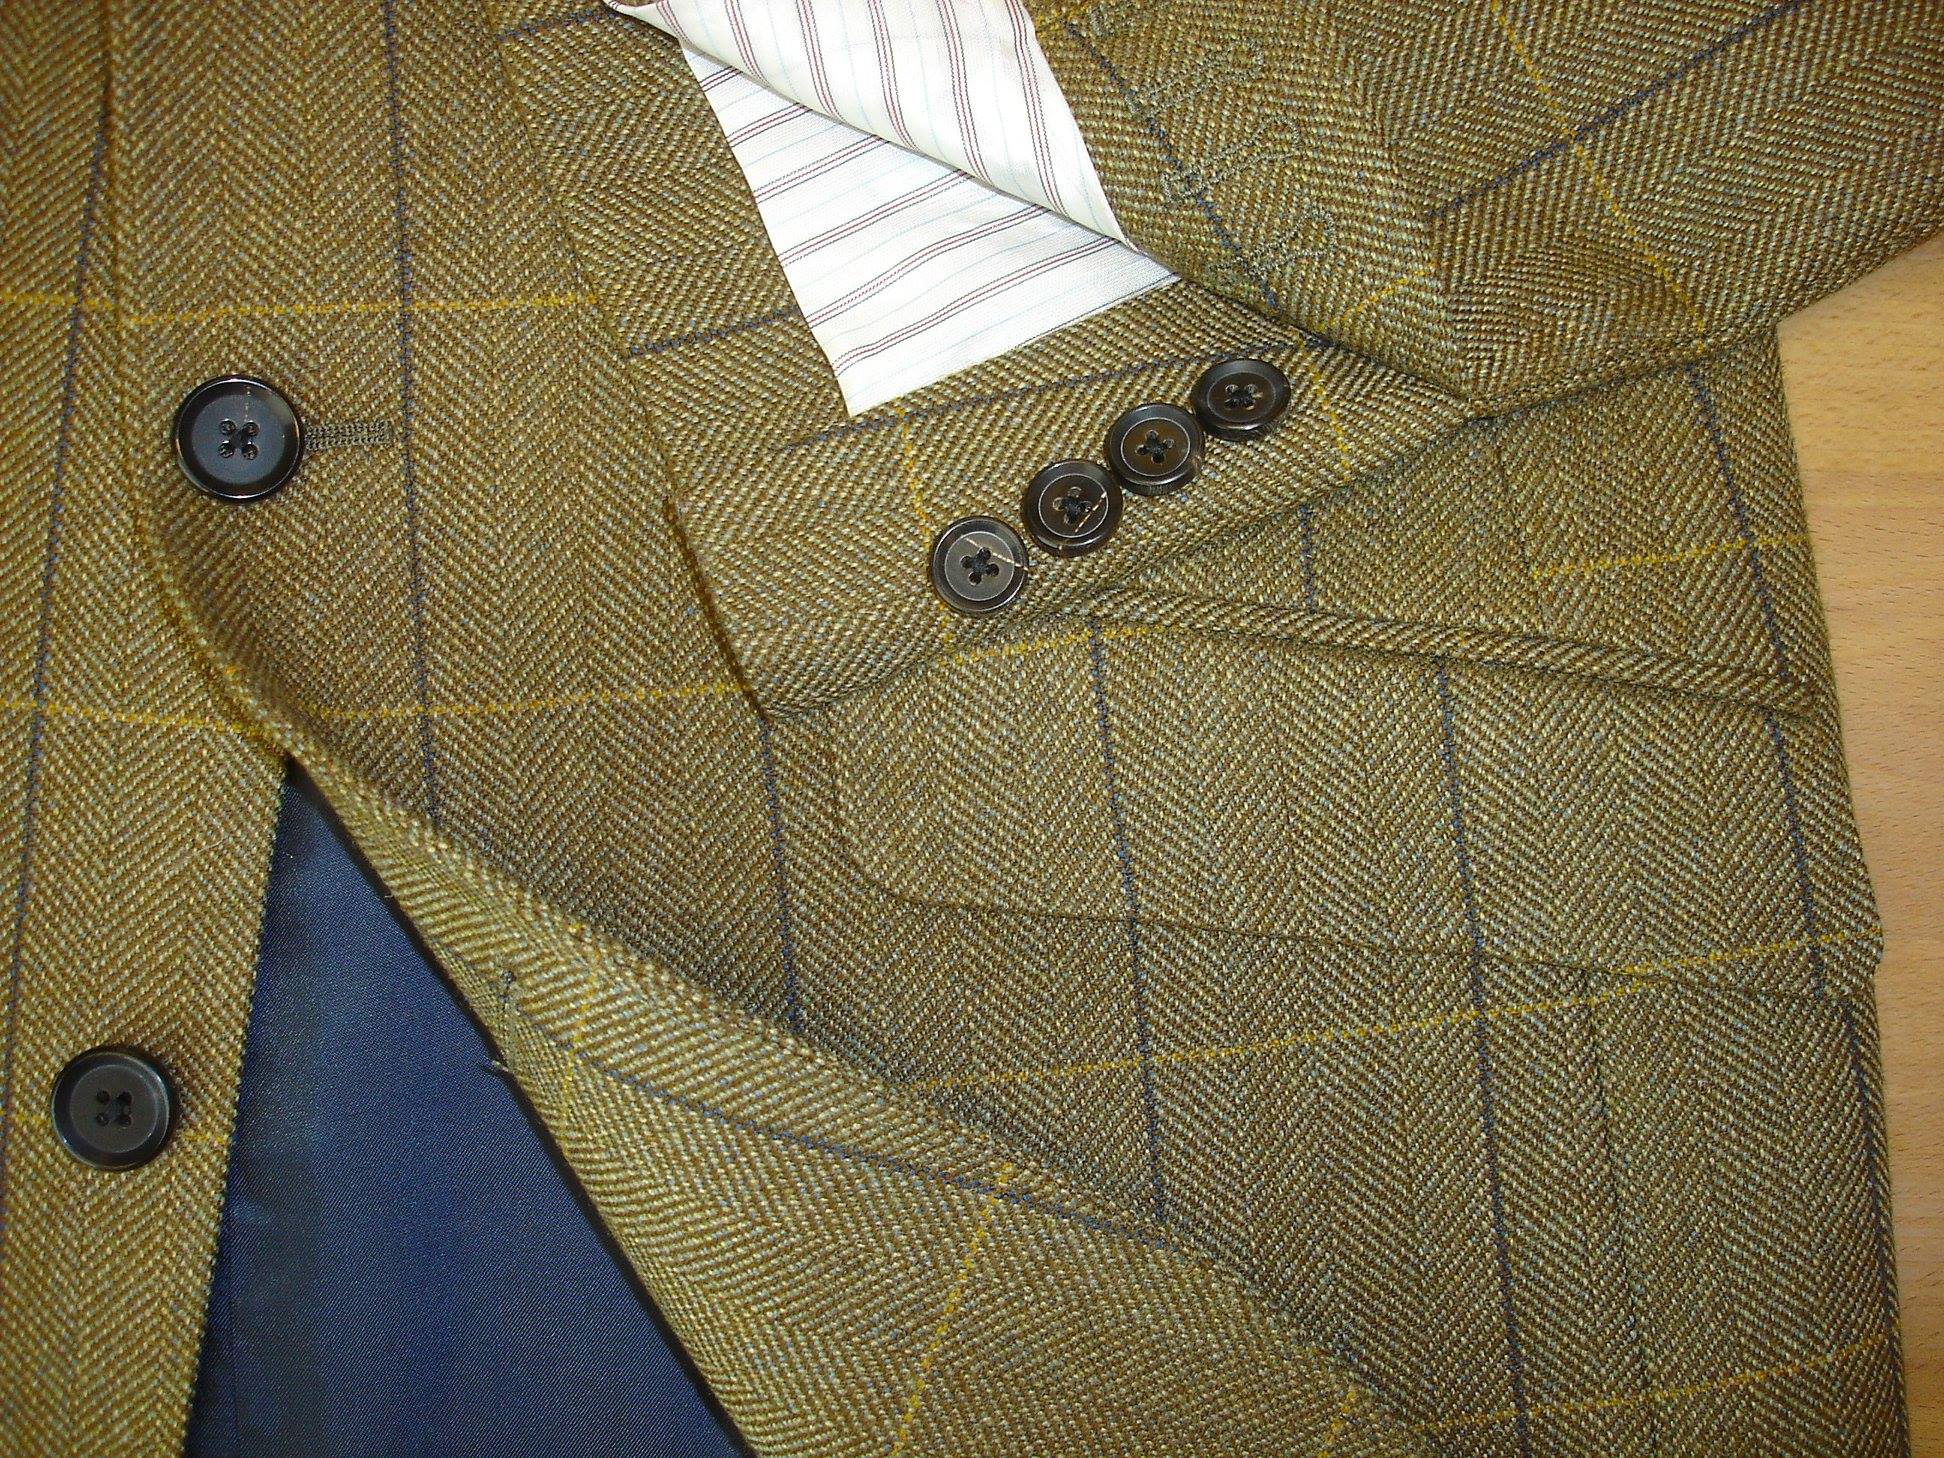 4 Piece Tweed Suit in Porter & Harding Hartwist — TWEED ADDICT